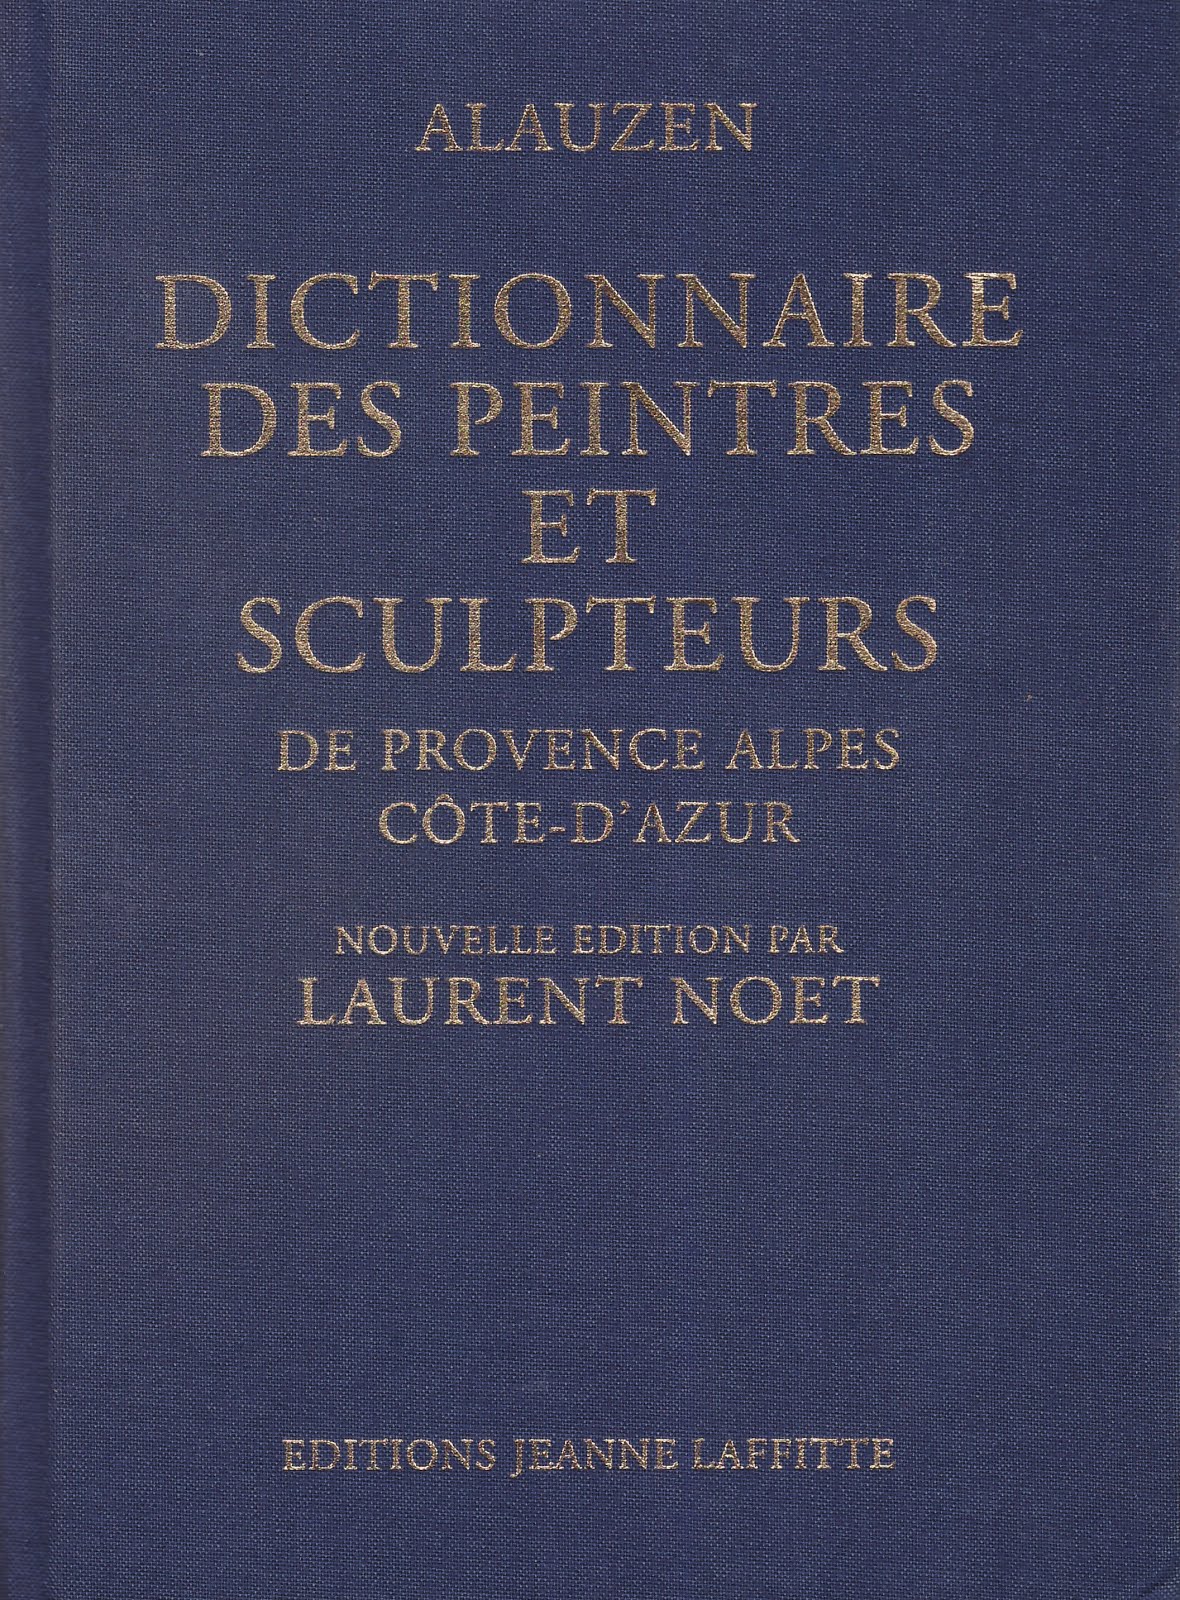 Dictionnaire des peintres et sculpteurs (2006)